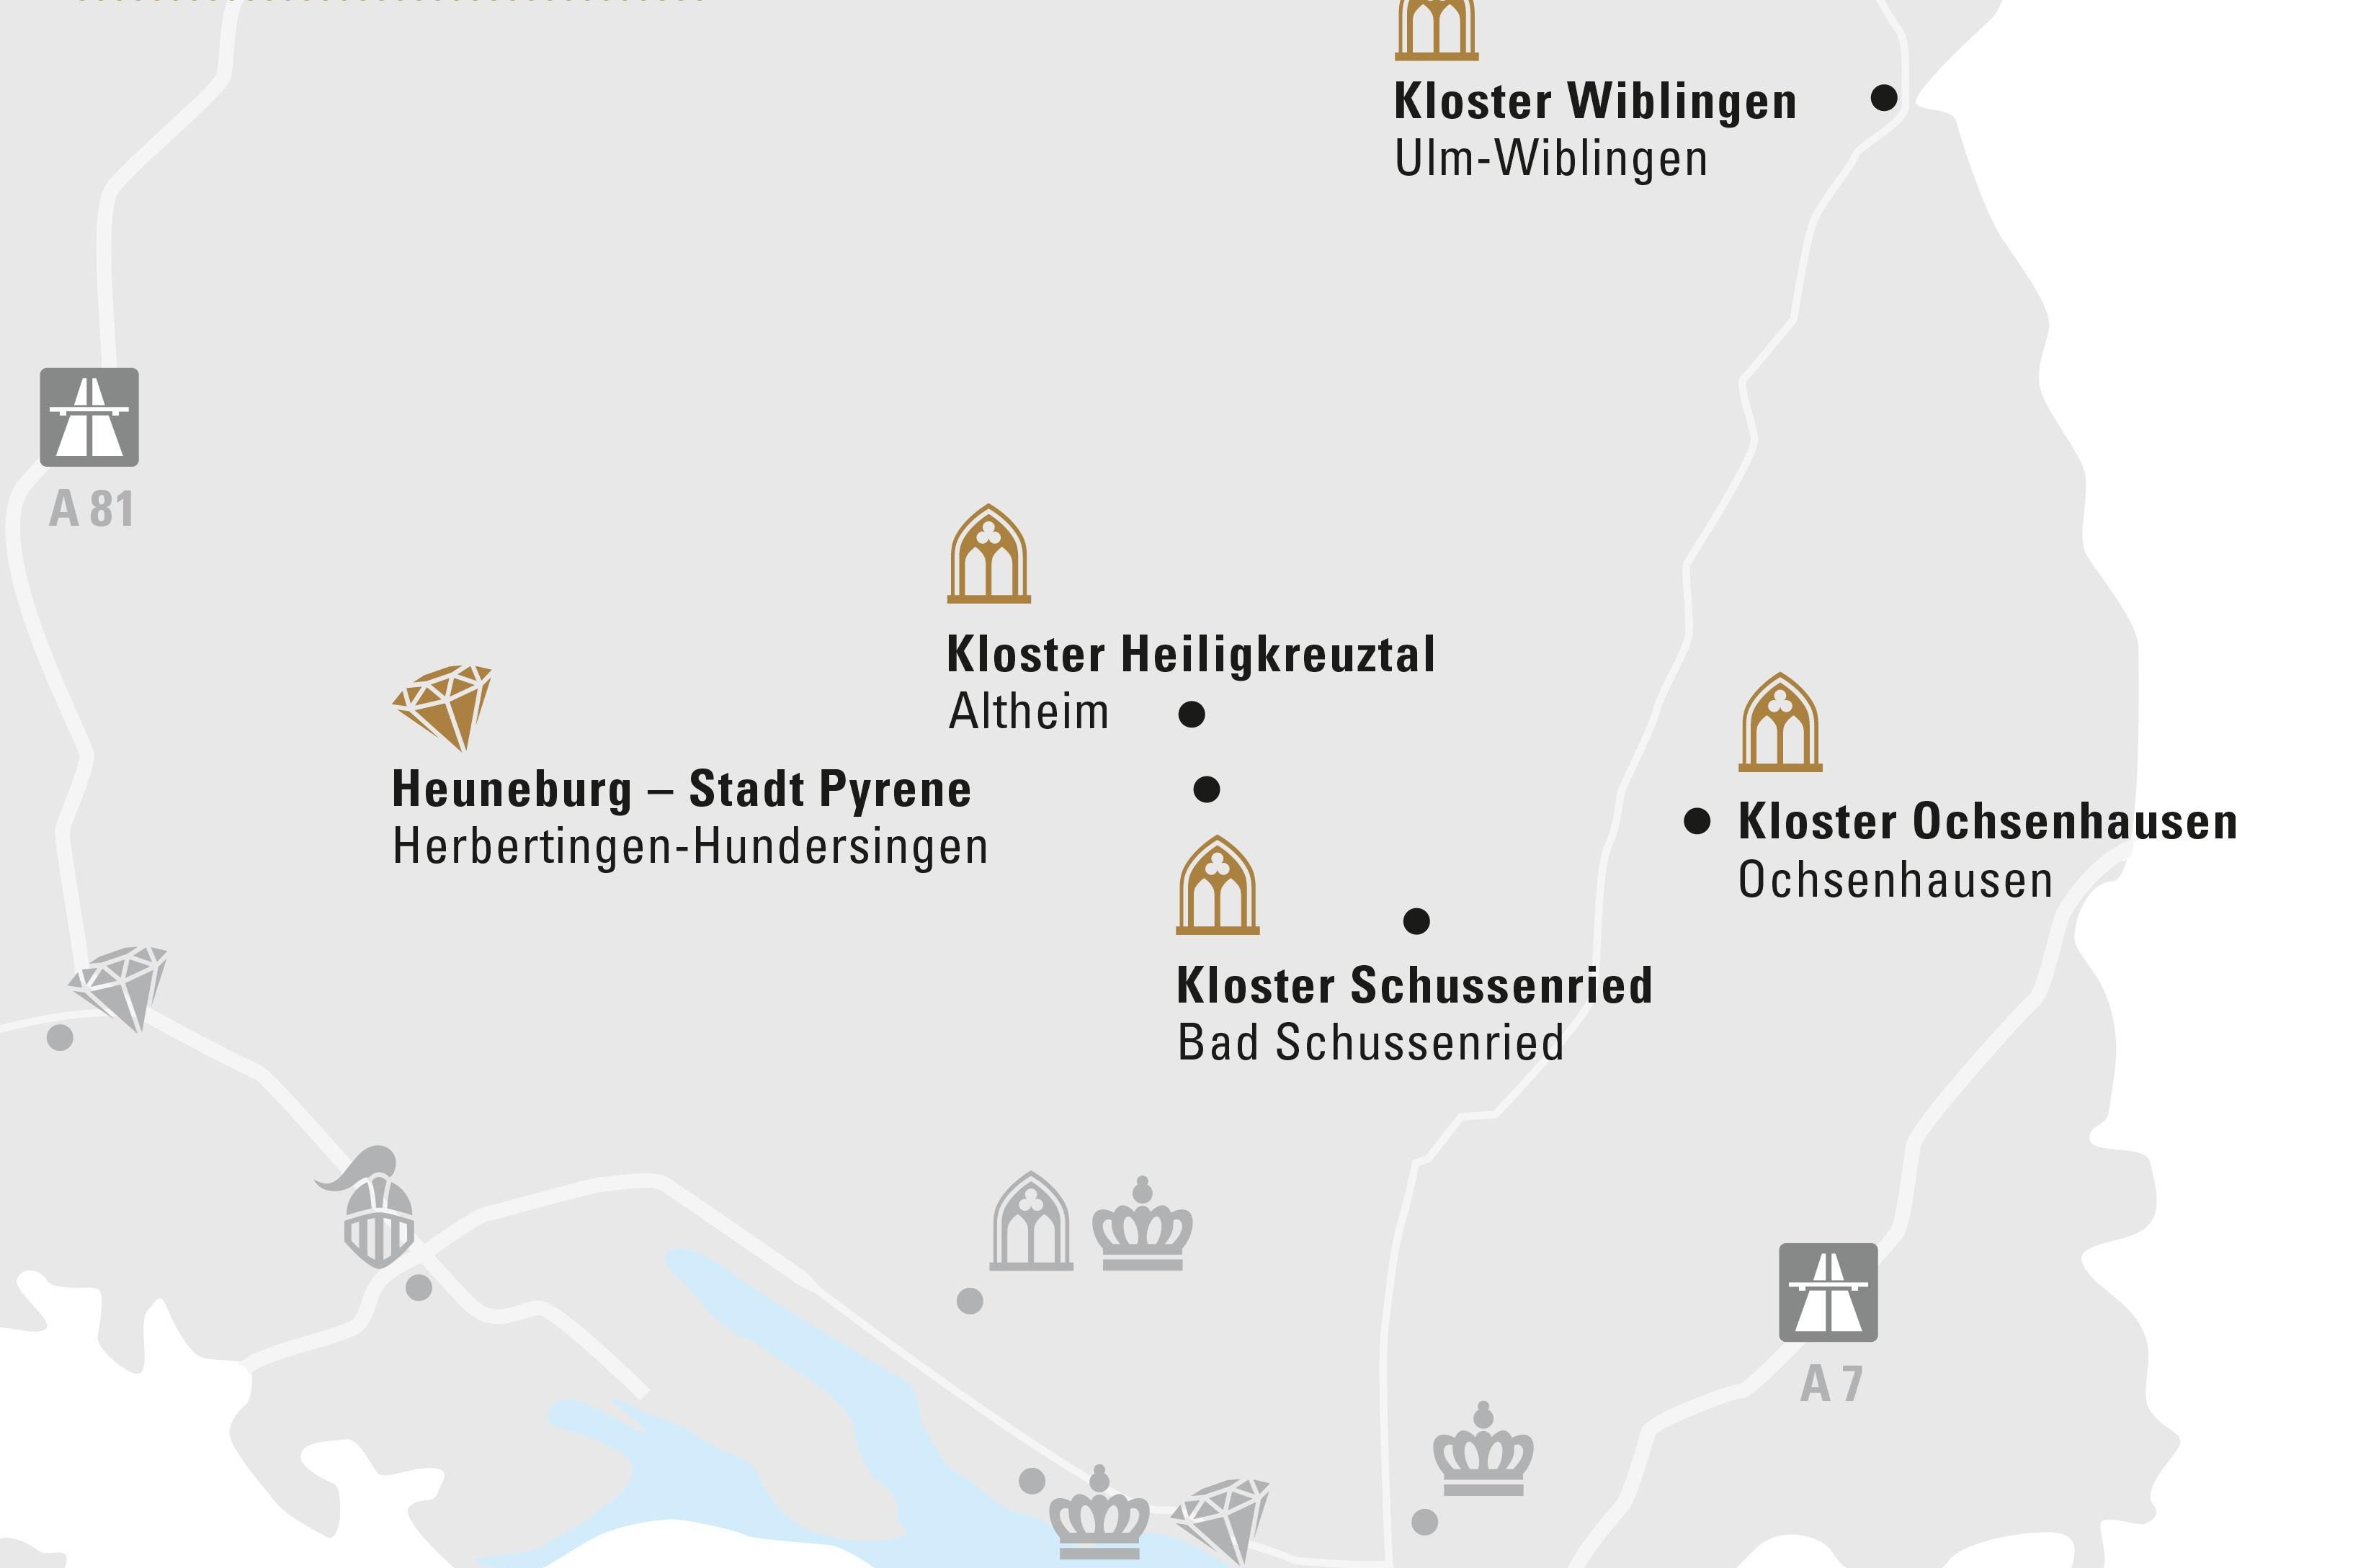 Region Oberschwaben & Ulm